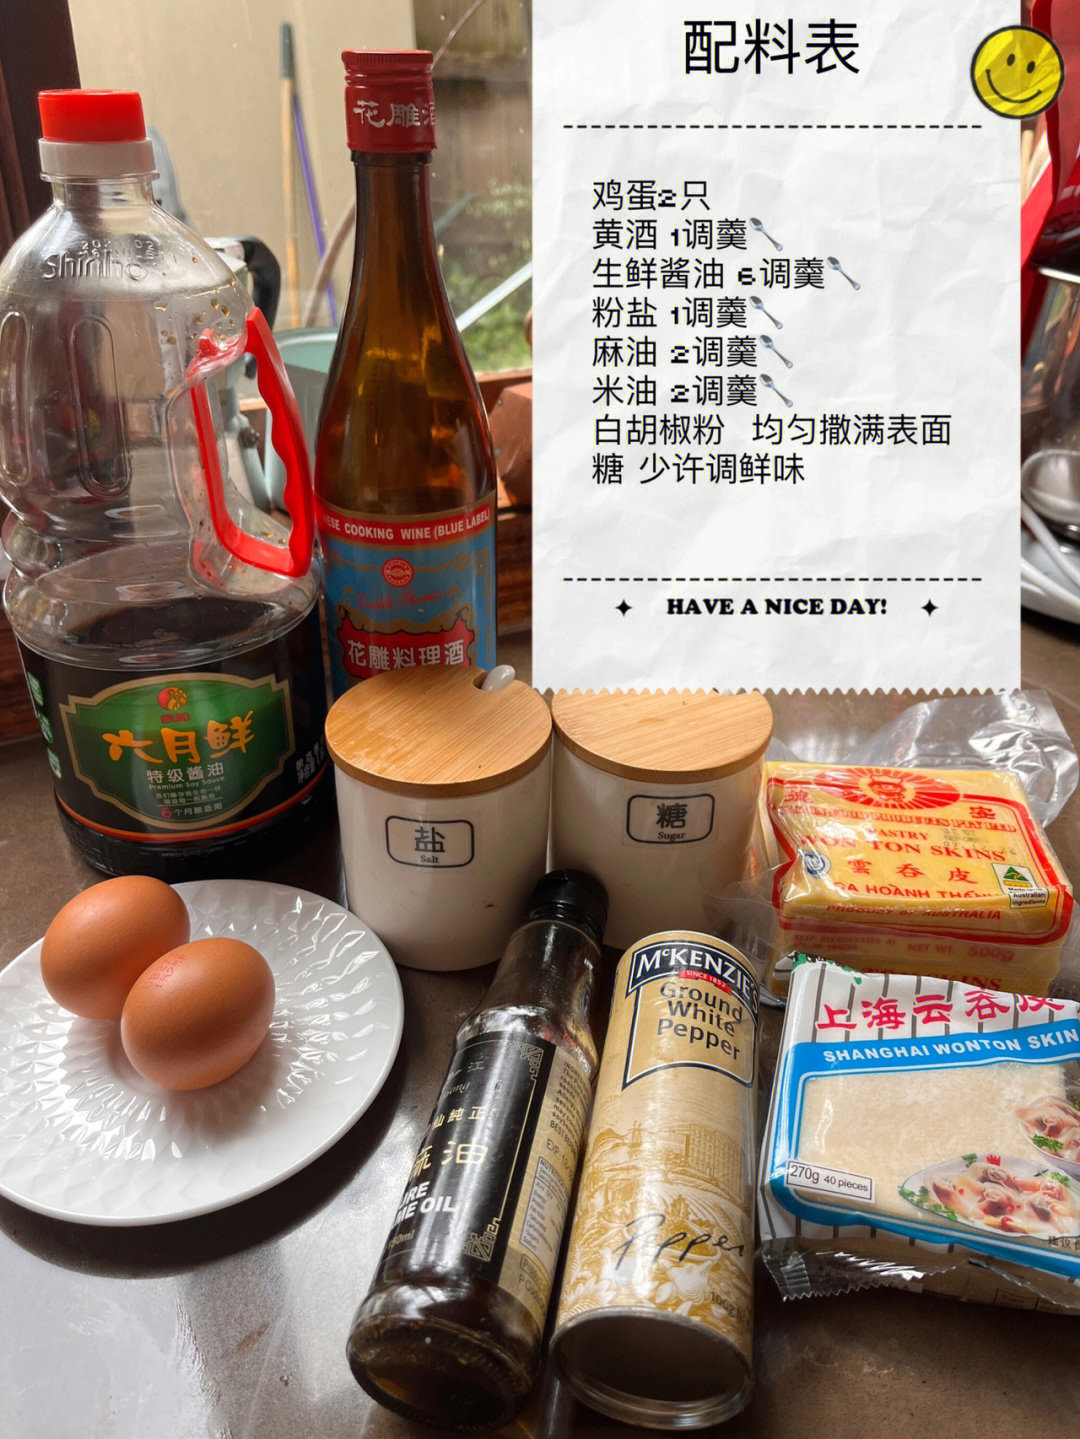 趁野生荠菜的最后一波,做了外婆的秘制上海大馄饨步骤一:准备主馅料猪